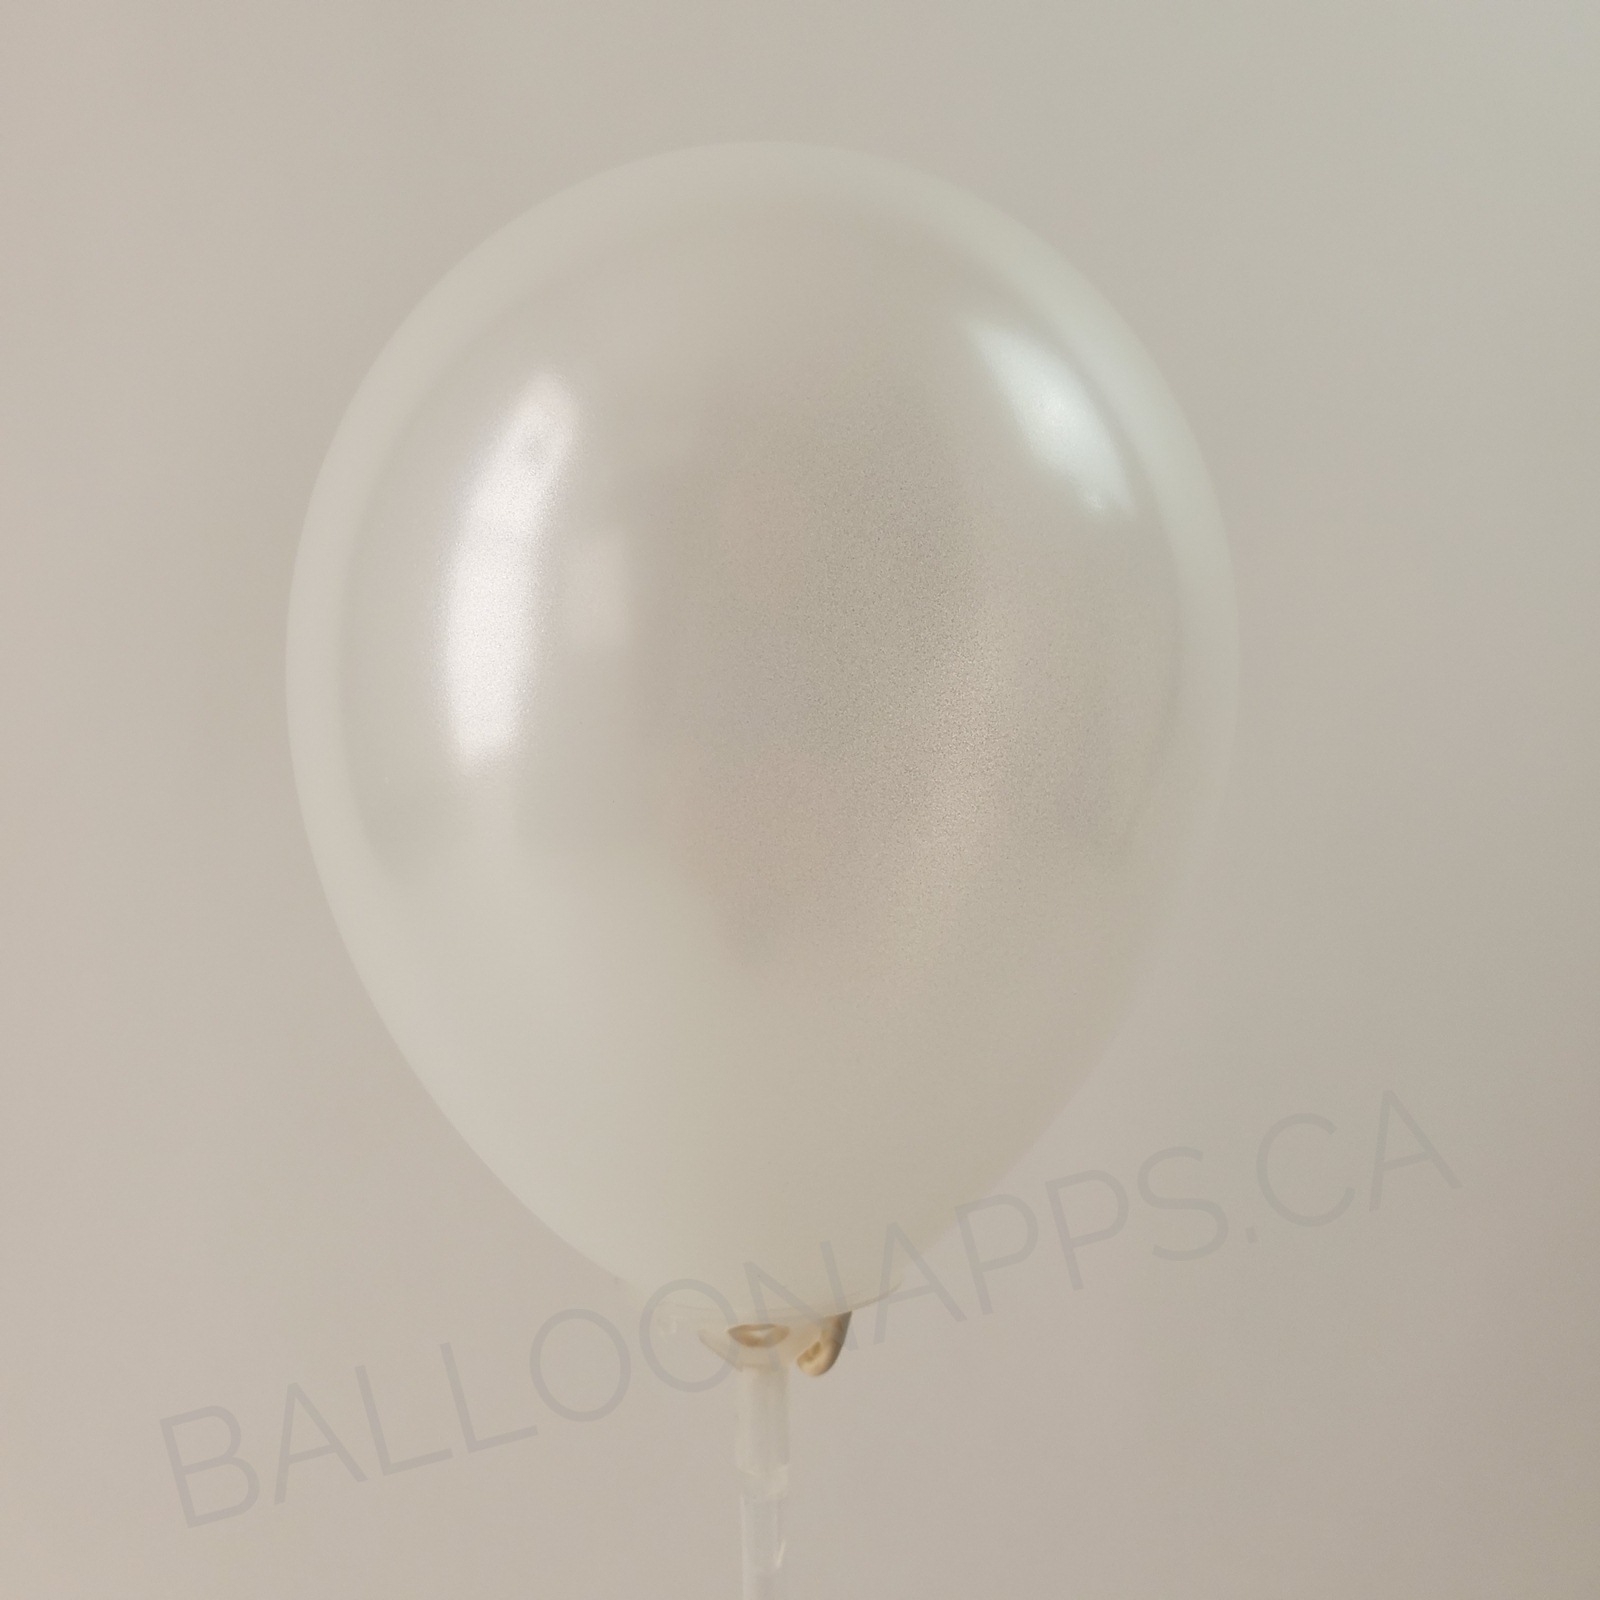 balloon texture Q (2) 30